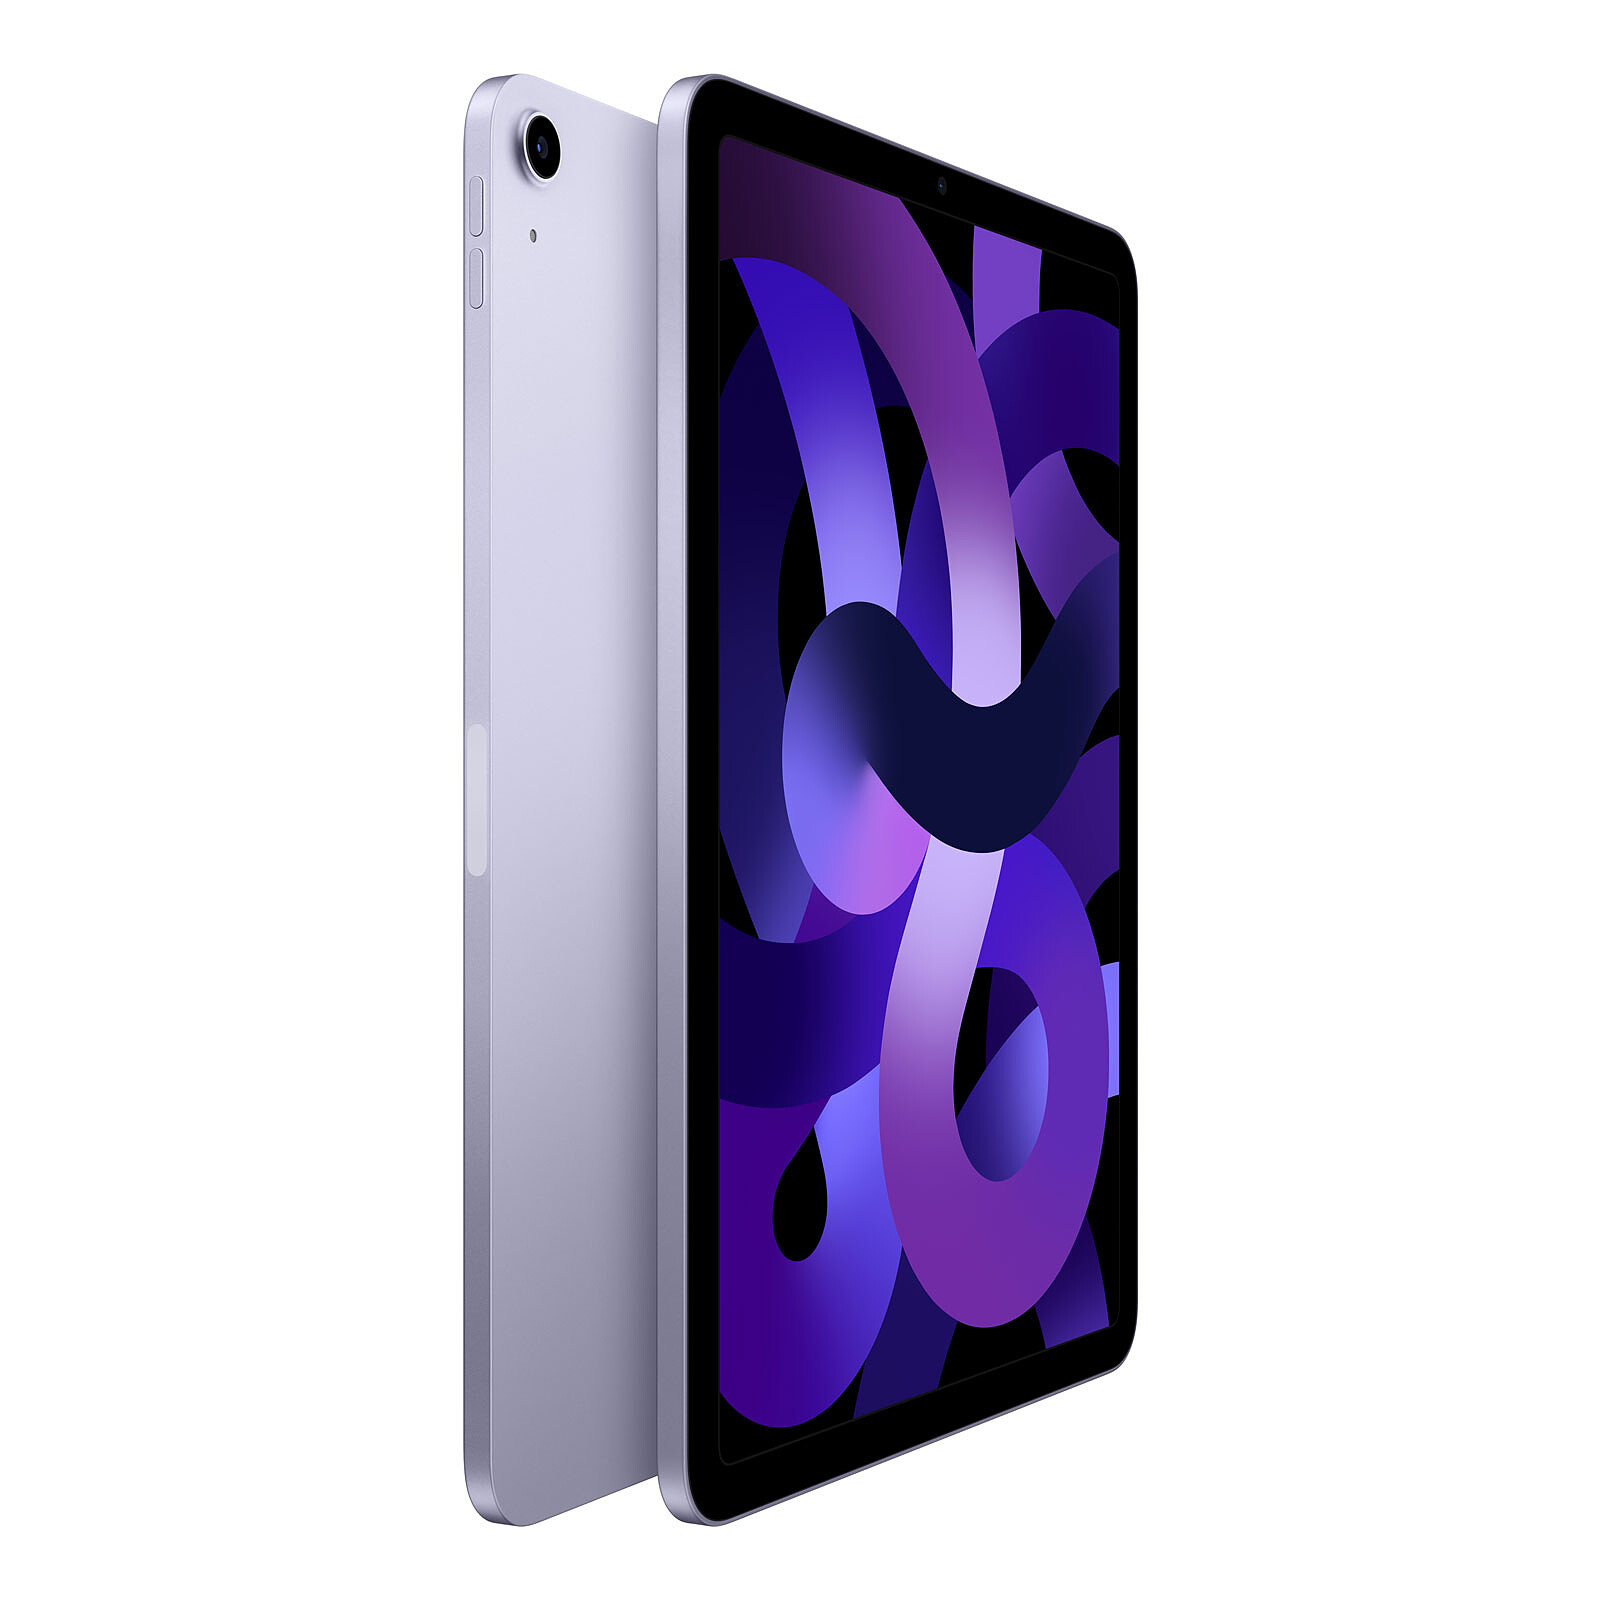 Apple iPad Air (2020) Wi-Fi 64 Go Bleu ciel - Tablette tactile